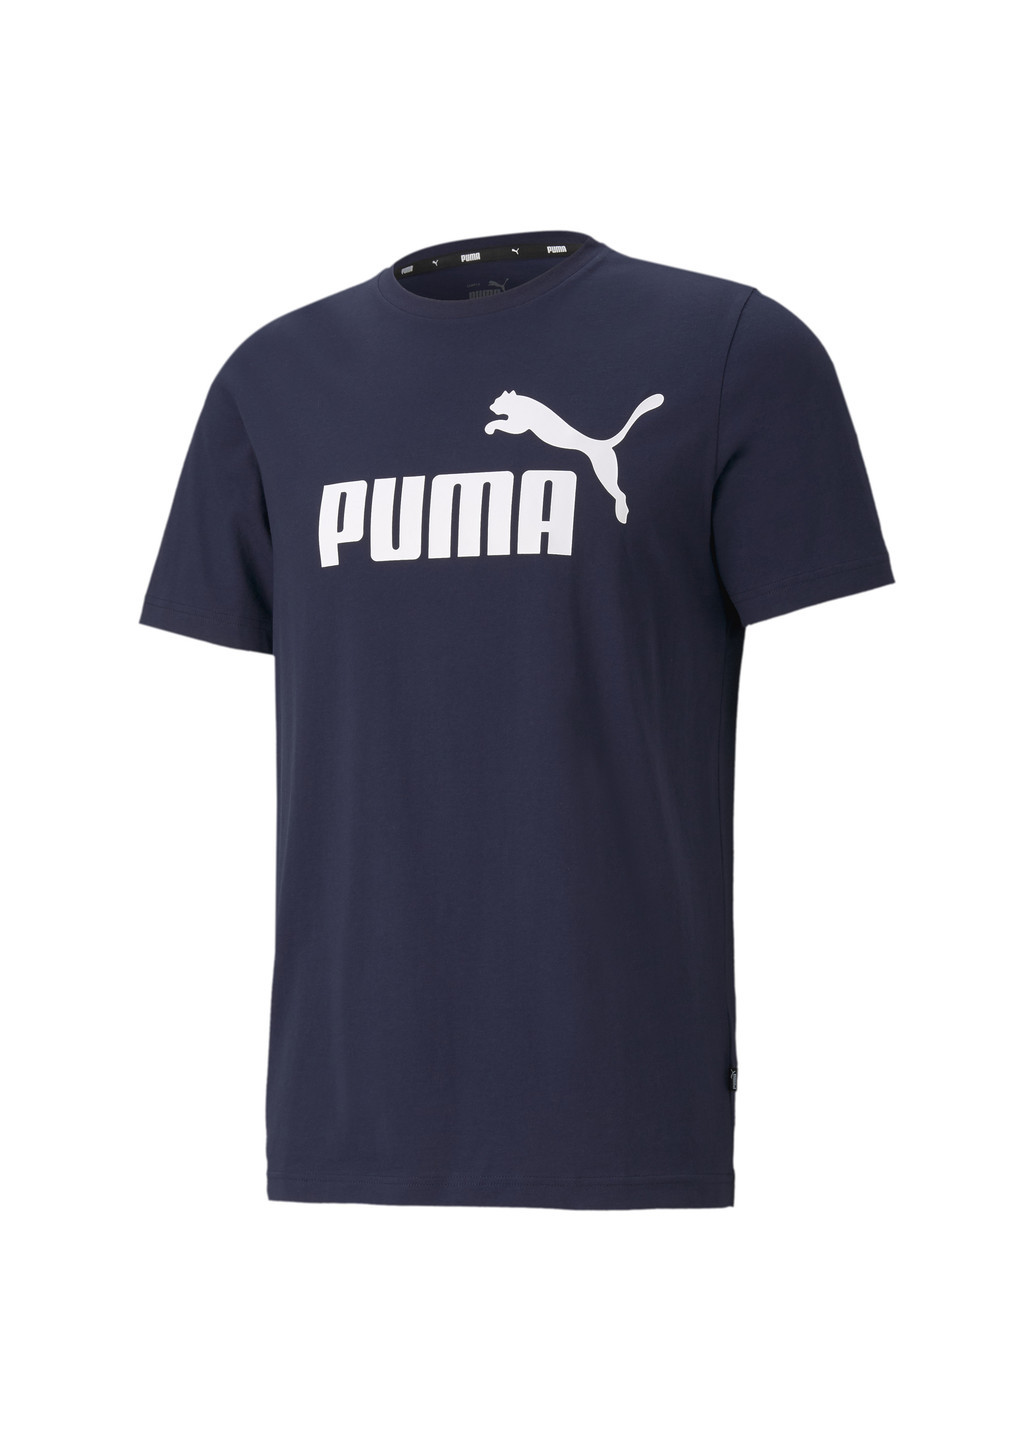 Синяя футболка essentials logo men's tee Puma